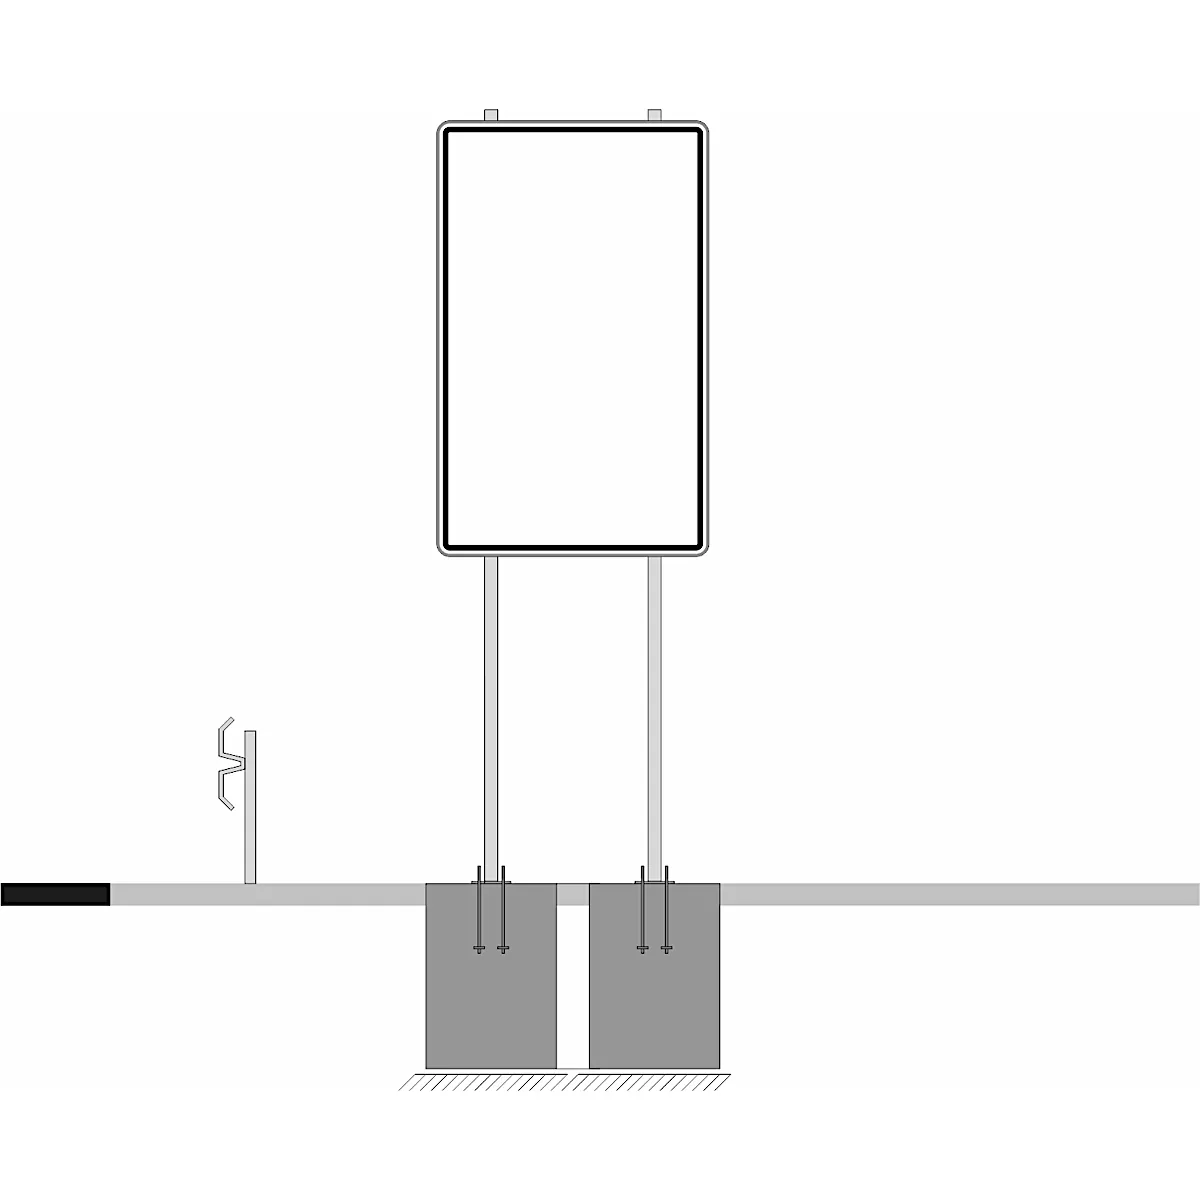 Plakattafel-set aus Dibond Traffic, weiß, 2000 x 1250 mm, inkl. 4 Klemmschellen mit 2 Rohrpfosten L. 3000 x 76 mm und 2 Bodenhülse